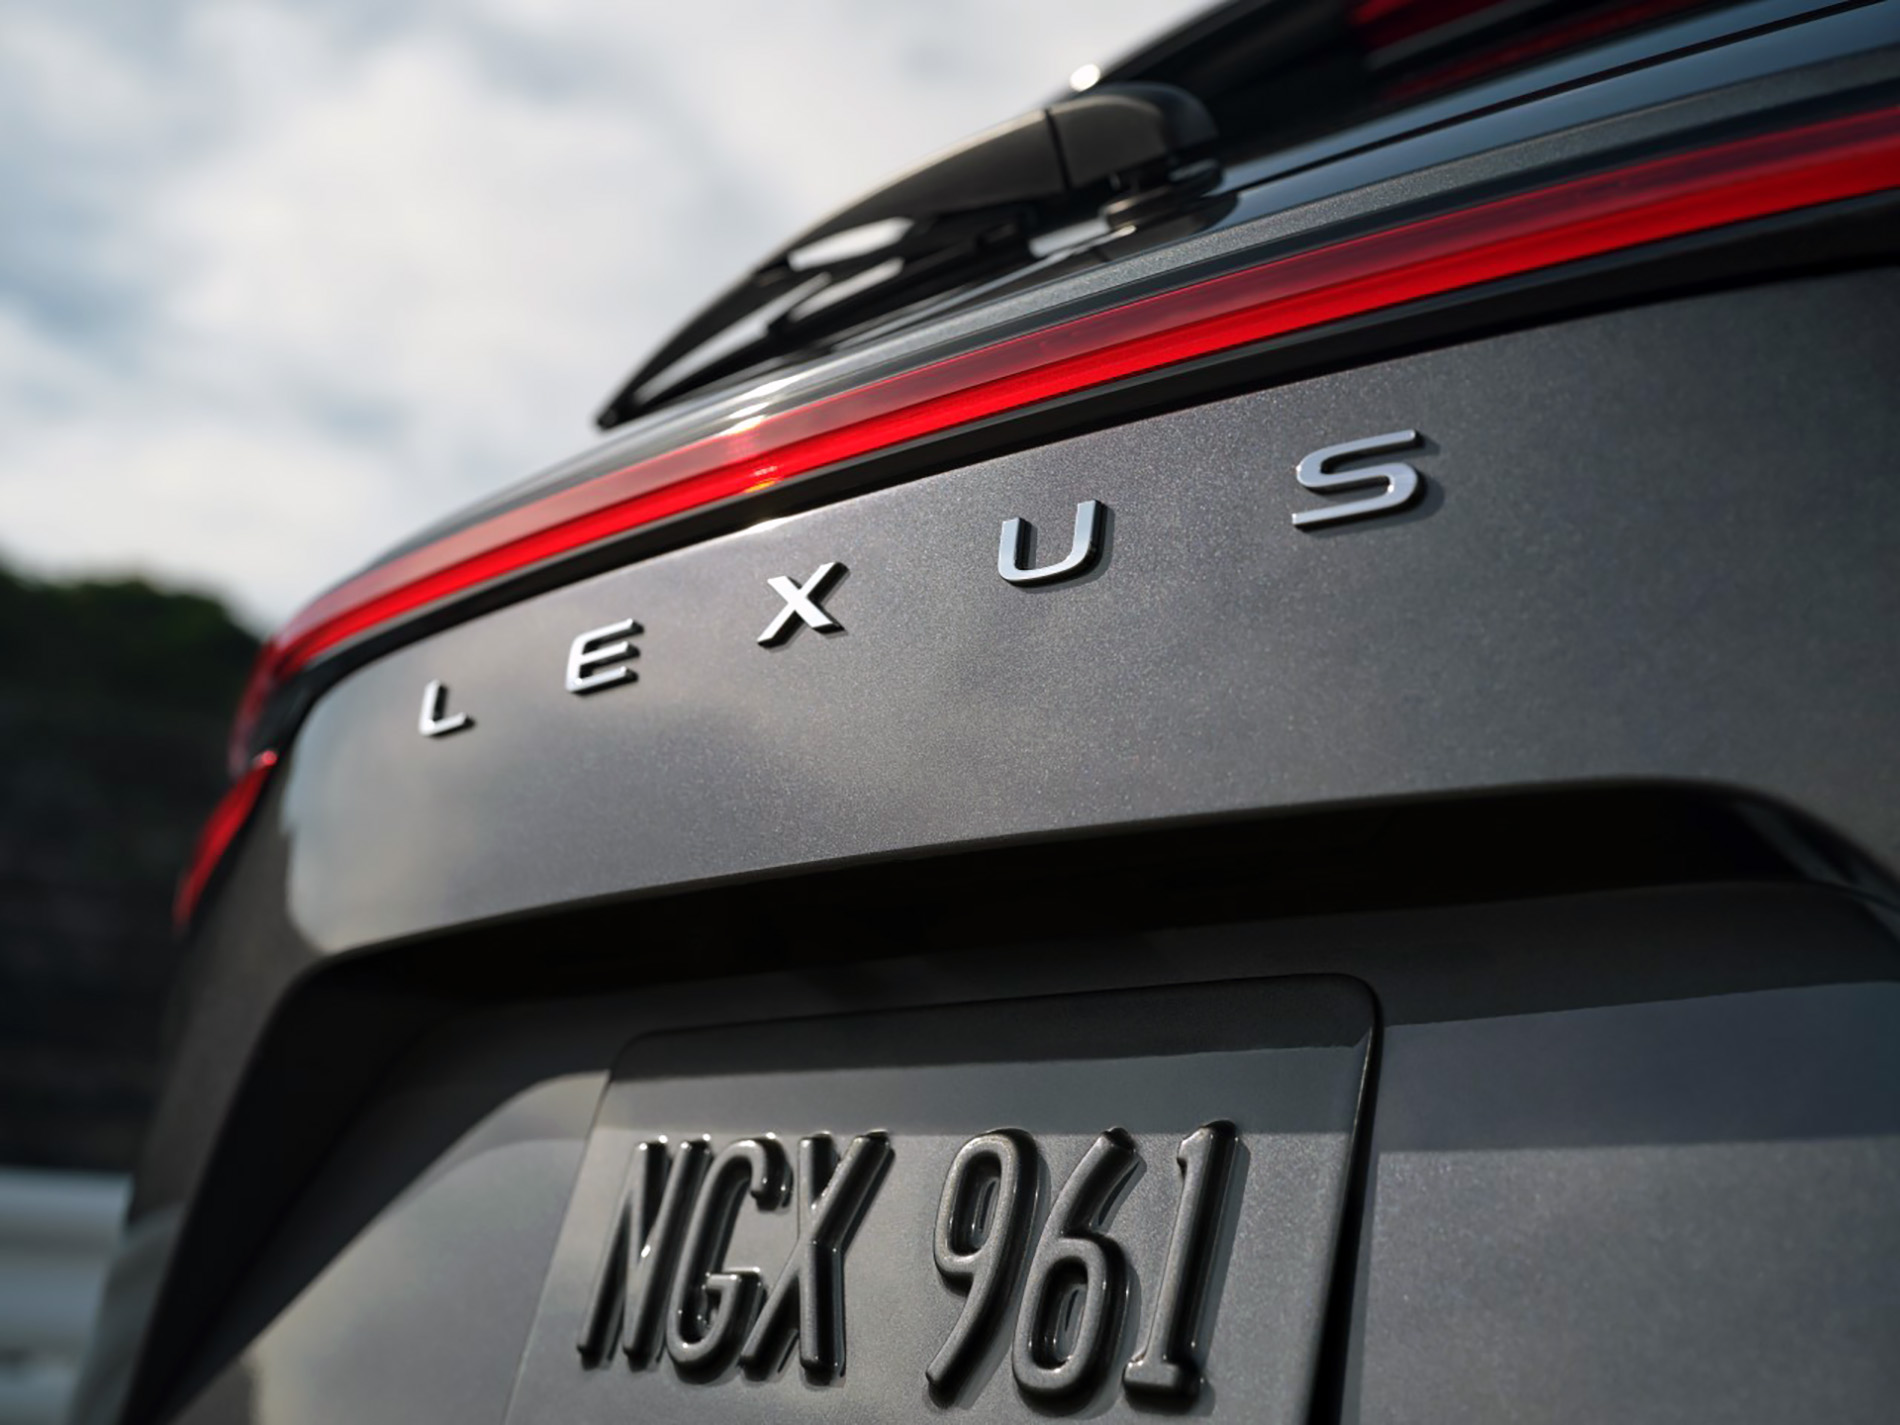 Lexus (częściowo) żegna się ze swoim logotypem